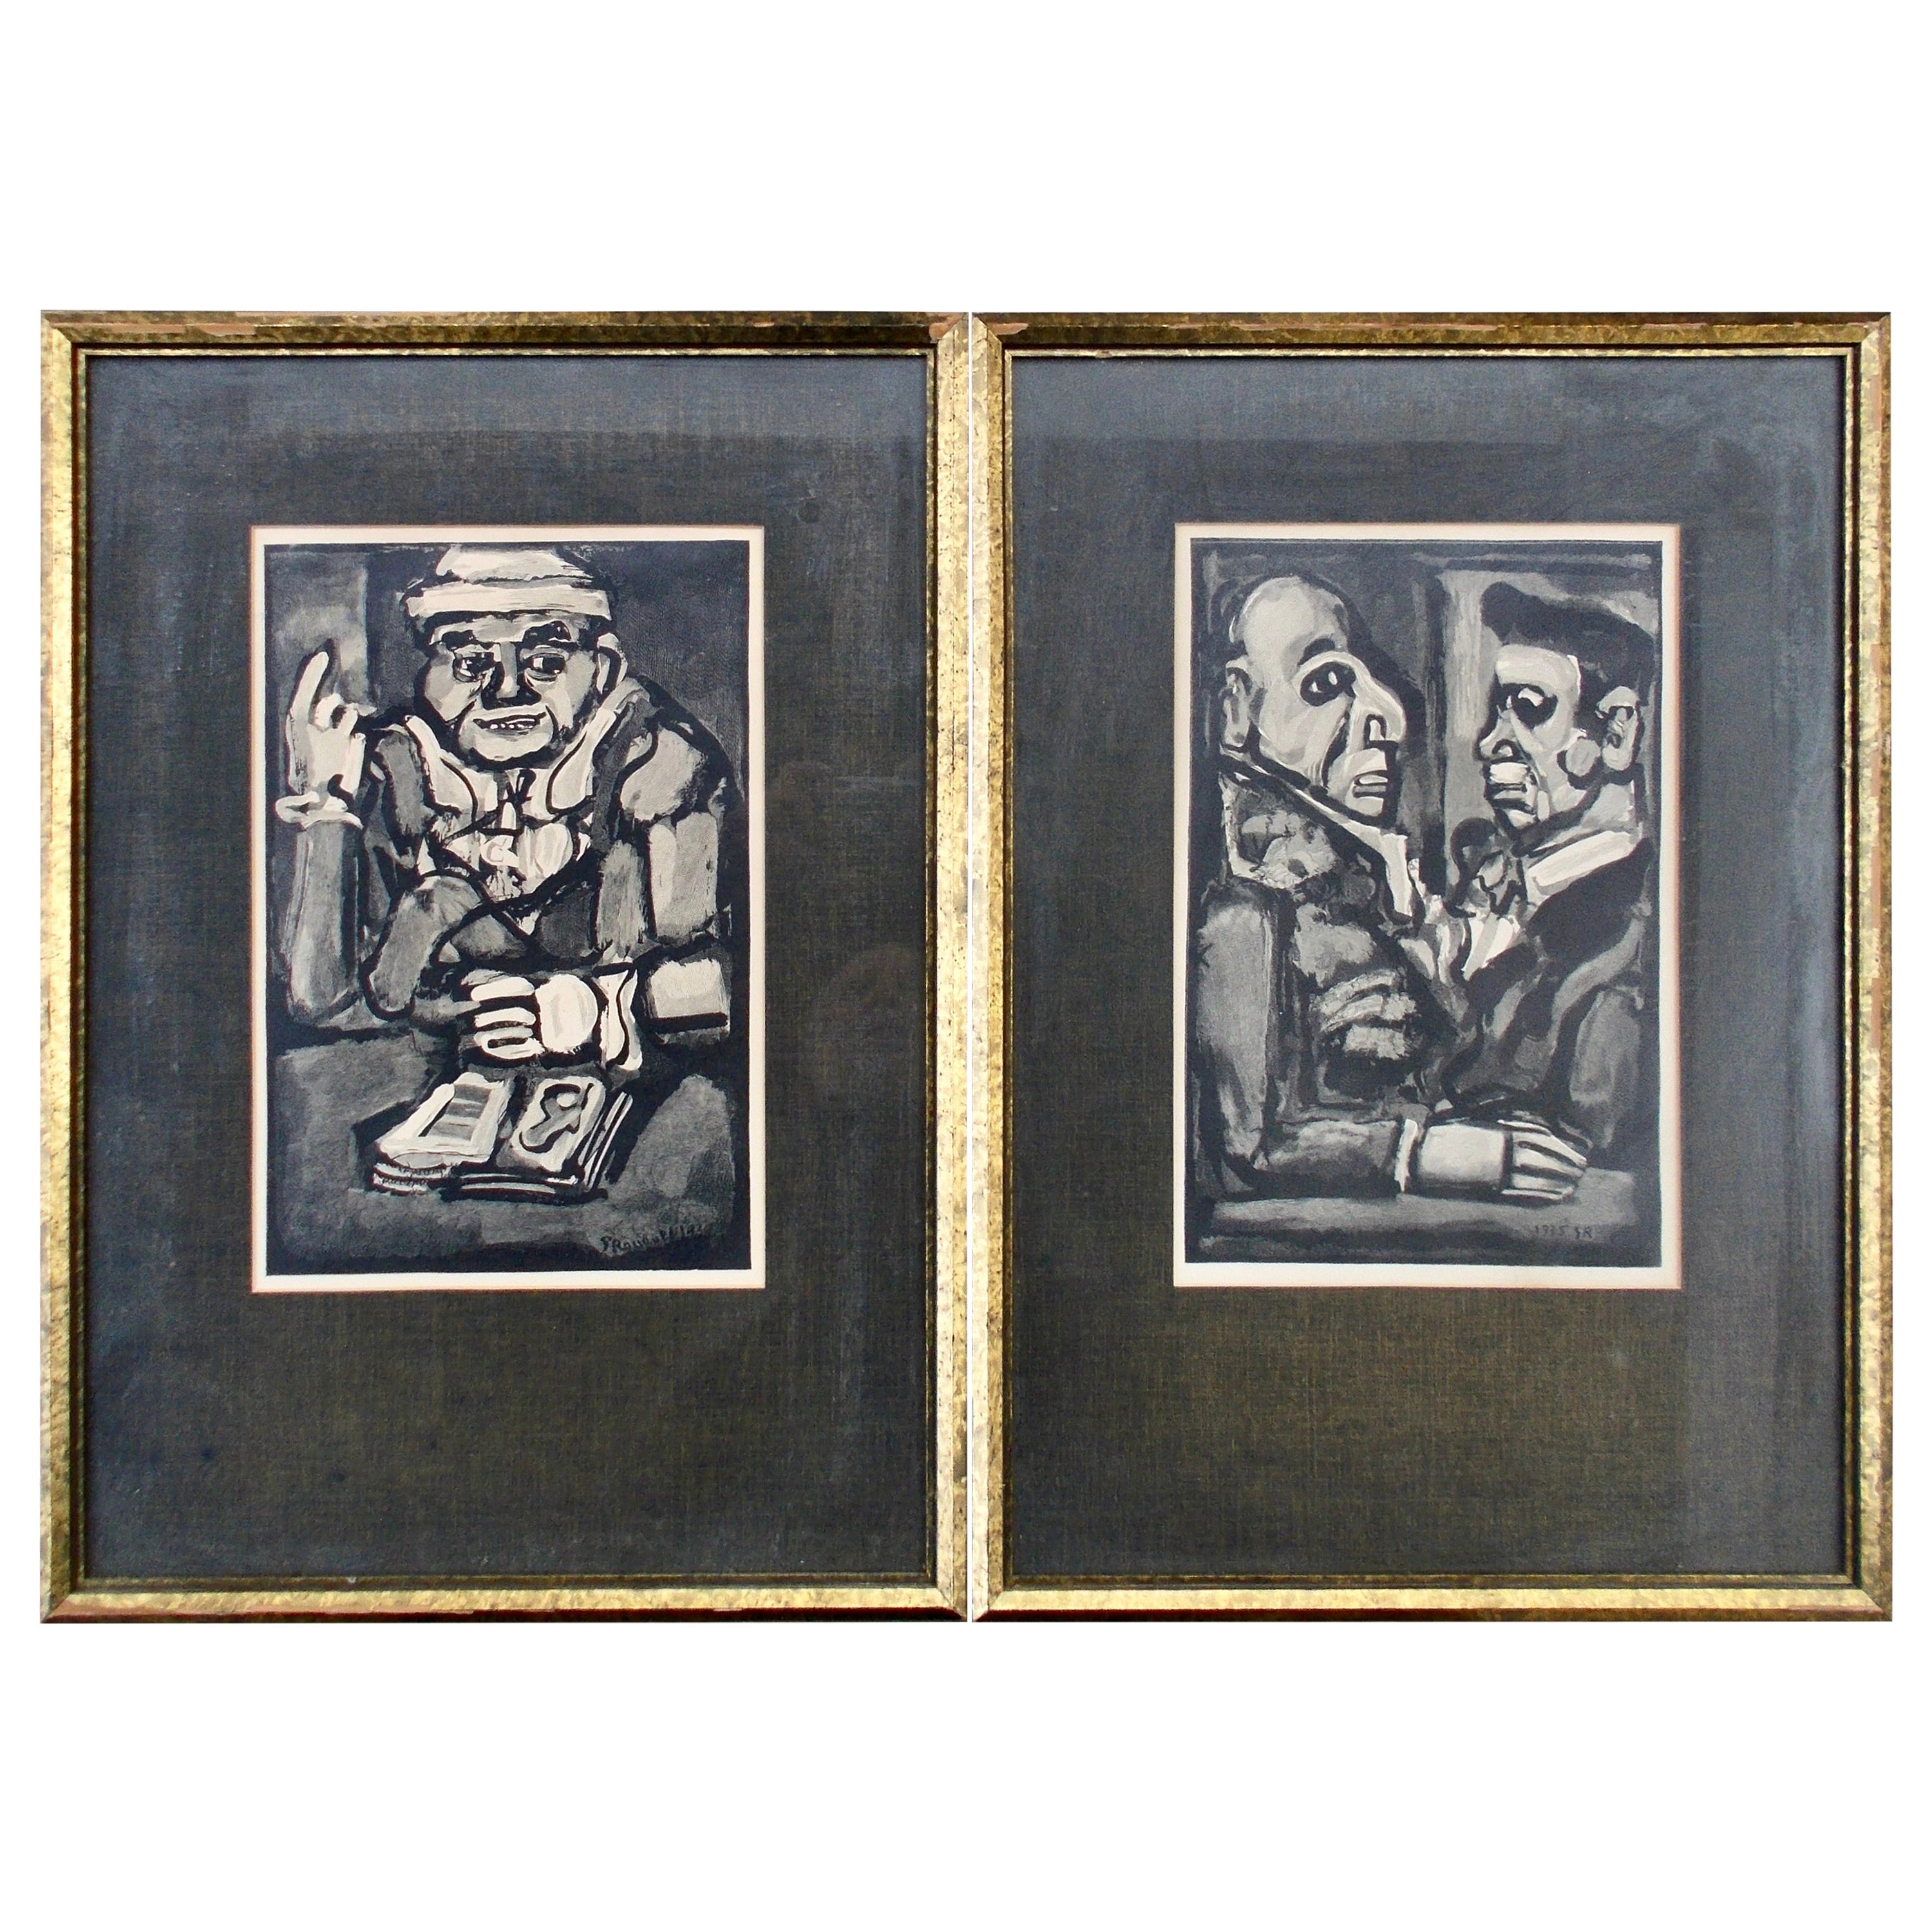 Deux gravures sur bois de Georges Rouault